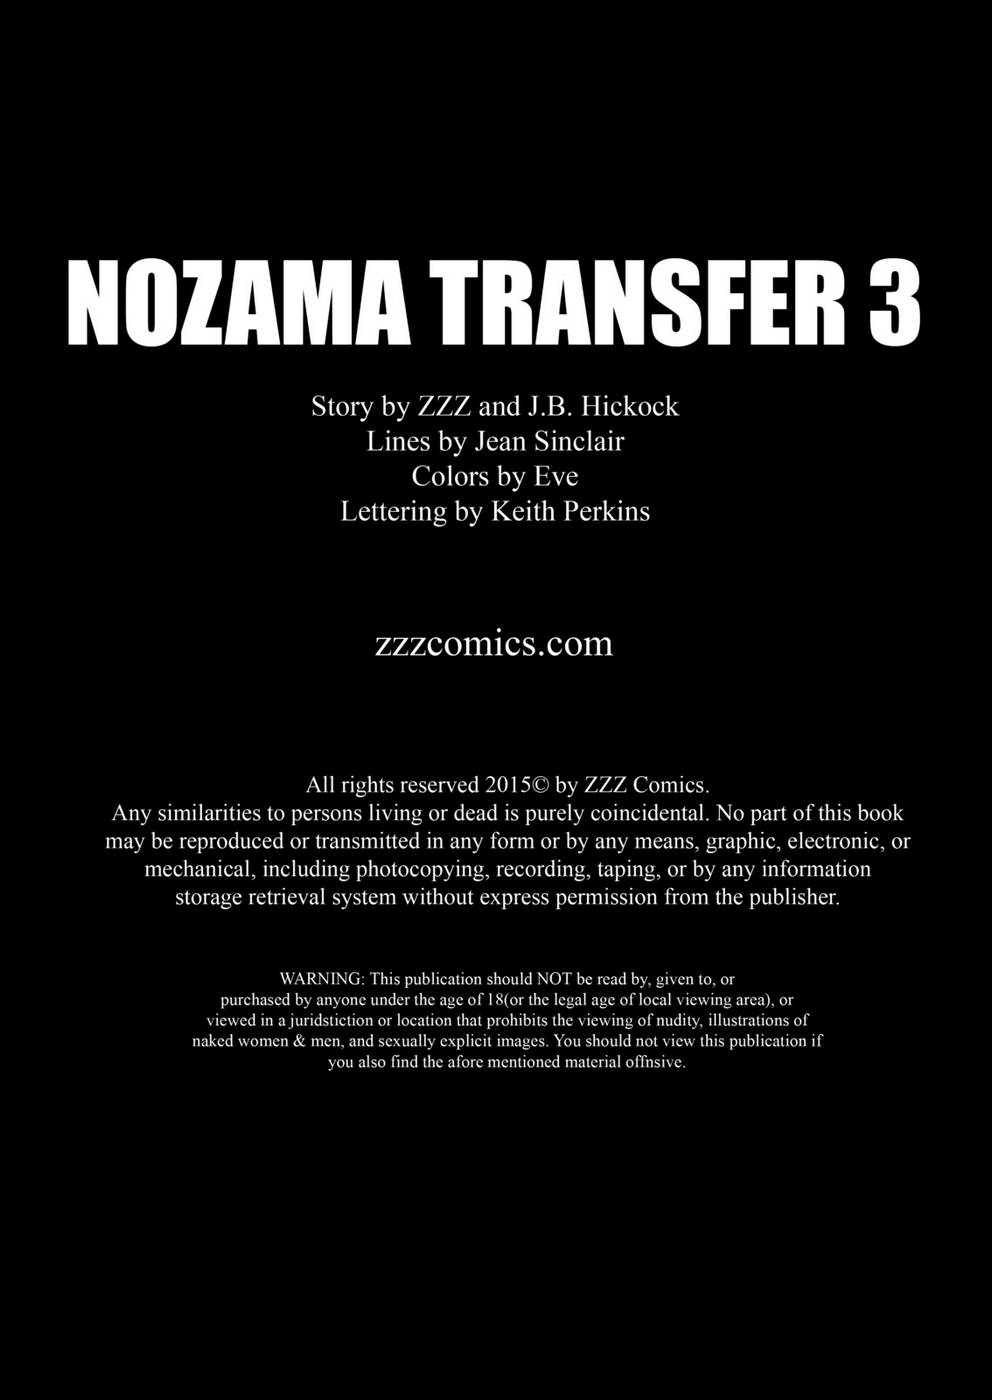 zzz nozama transferência 3